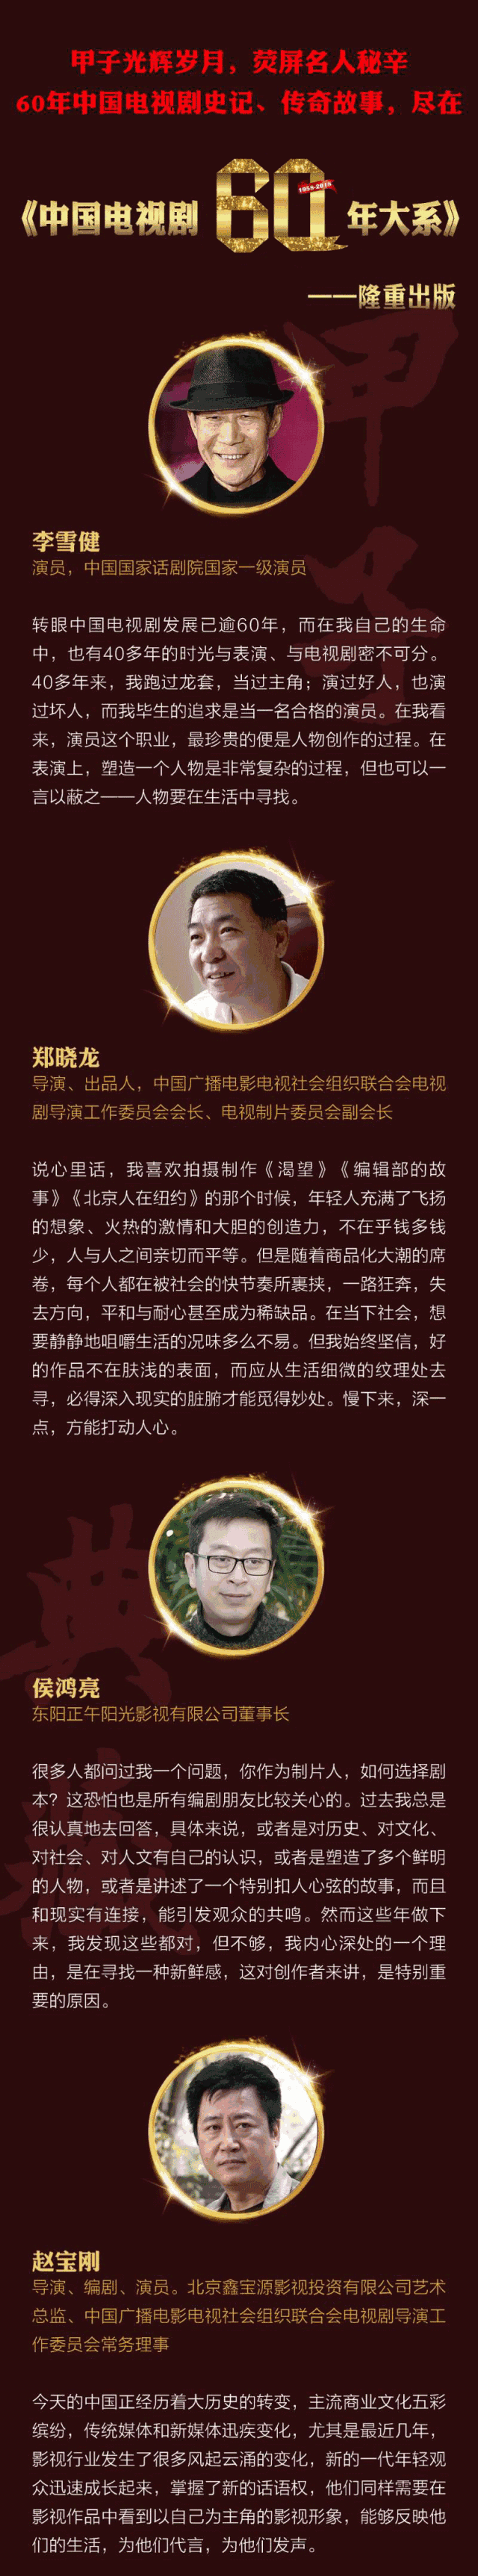 黄磊孙俪周迅等荧屏名人秘辛尽在《中国电视剧60年大系》